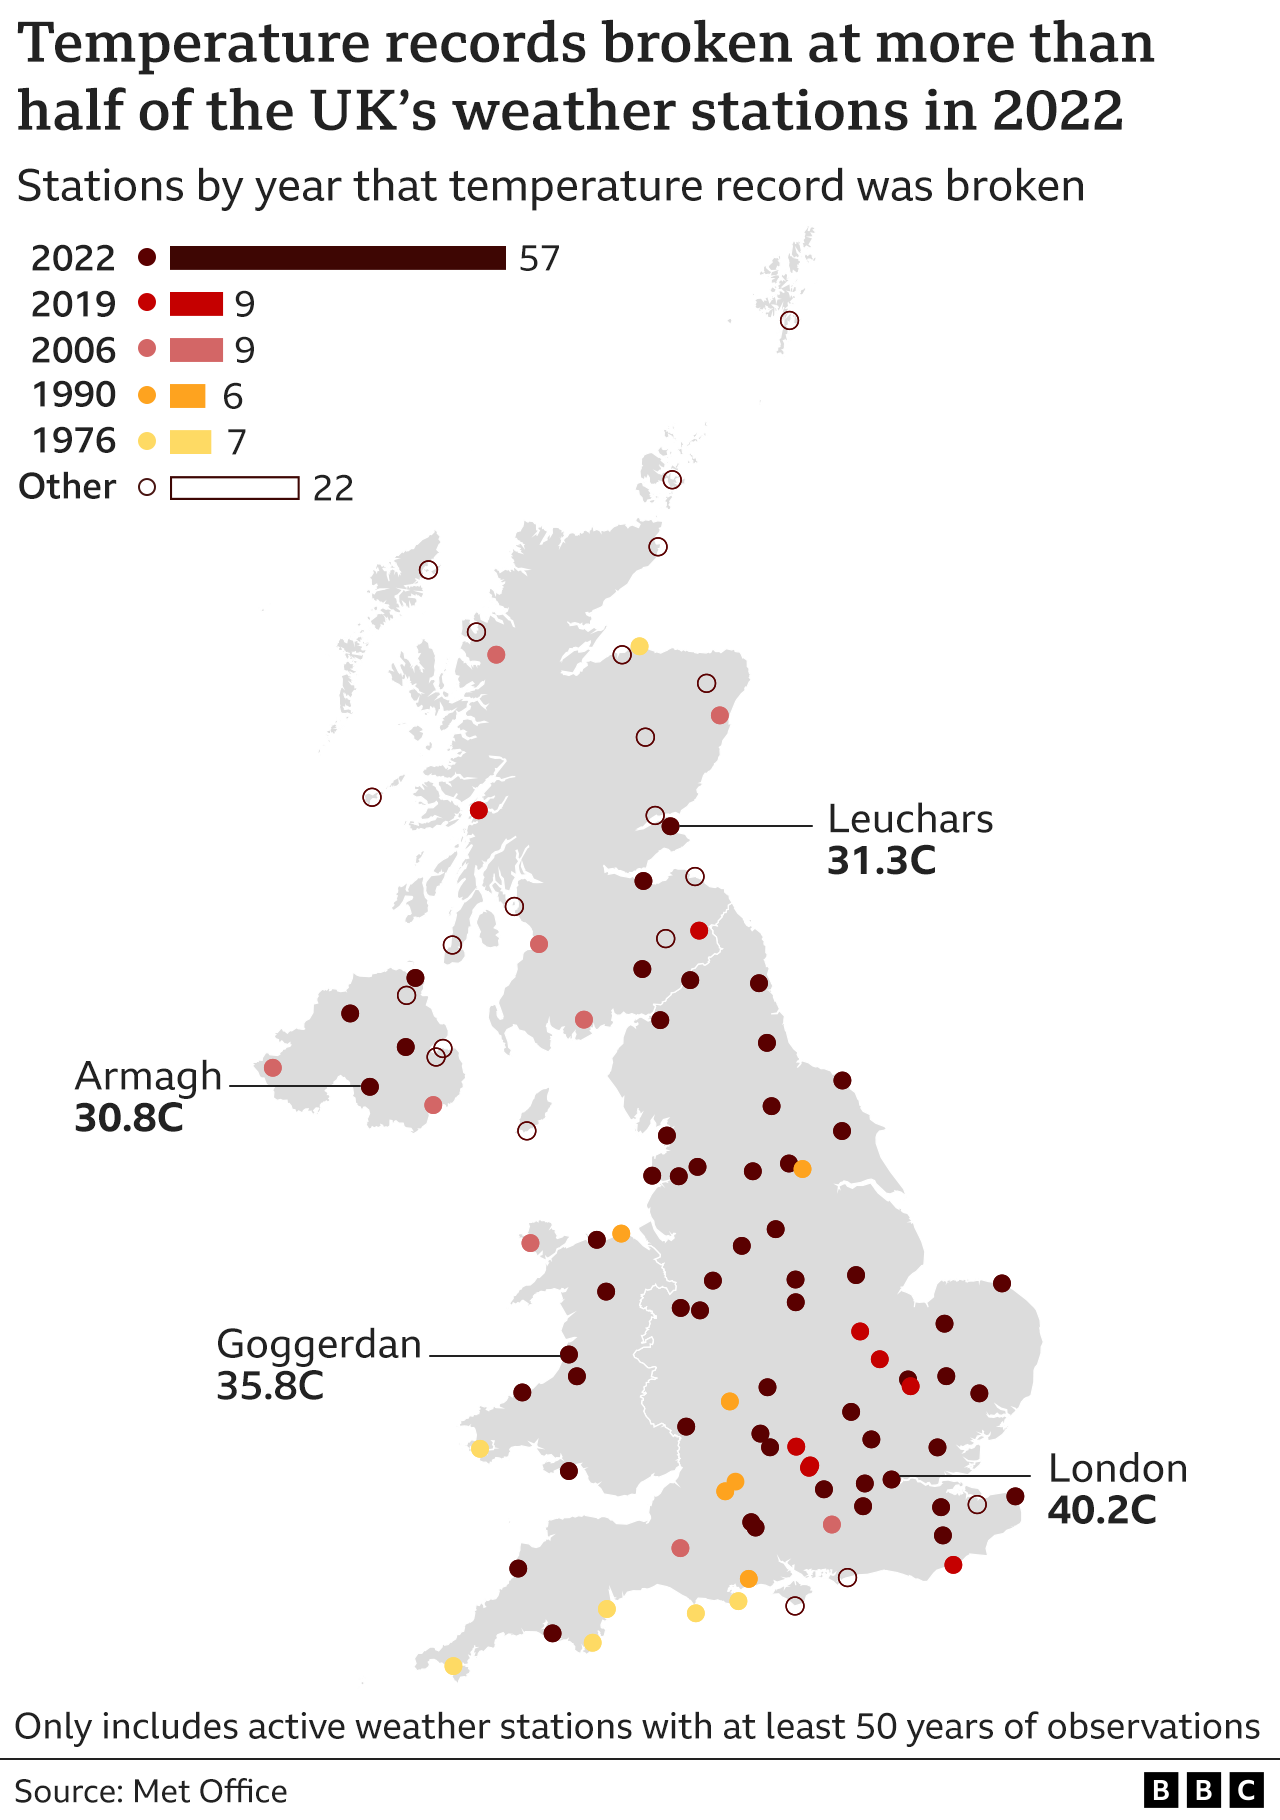 Карта Великобритании, показывающая, что более половины (57 из 109) метеостанций с данными как минимум за 50 лет побили свой исторический максимум в 2022 году. Другими годами, в которых все еще остаются рекорды, являются 2019 и 2006 годы с девятью рекордами, а в 1990 году — шесть. и 1976 г. - 7. 22 рекорда, установленных в другие годы, все еще остаются в силе.